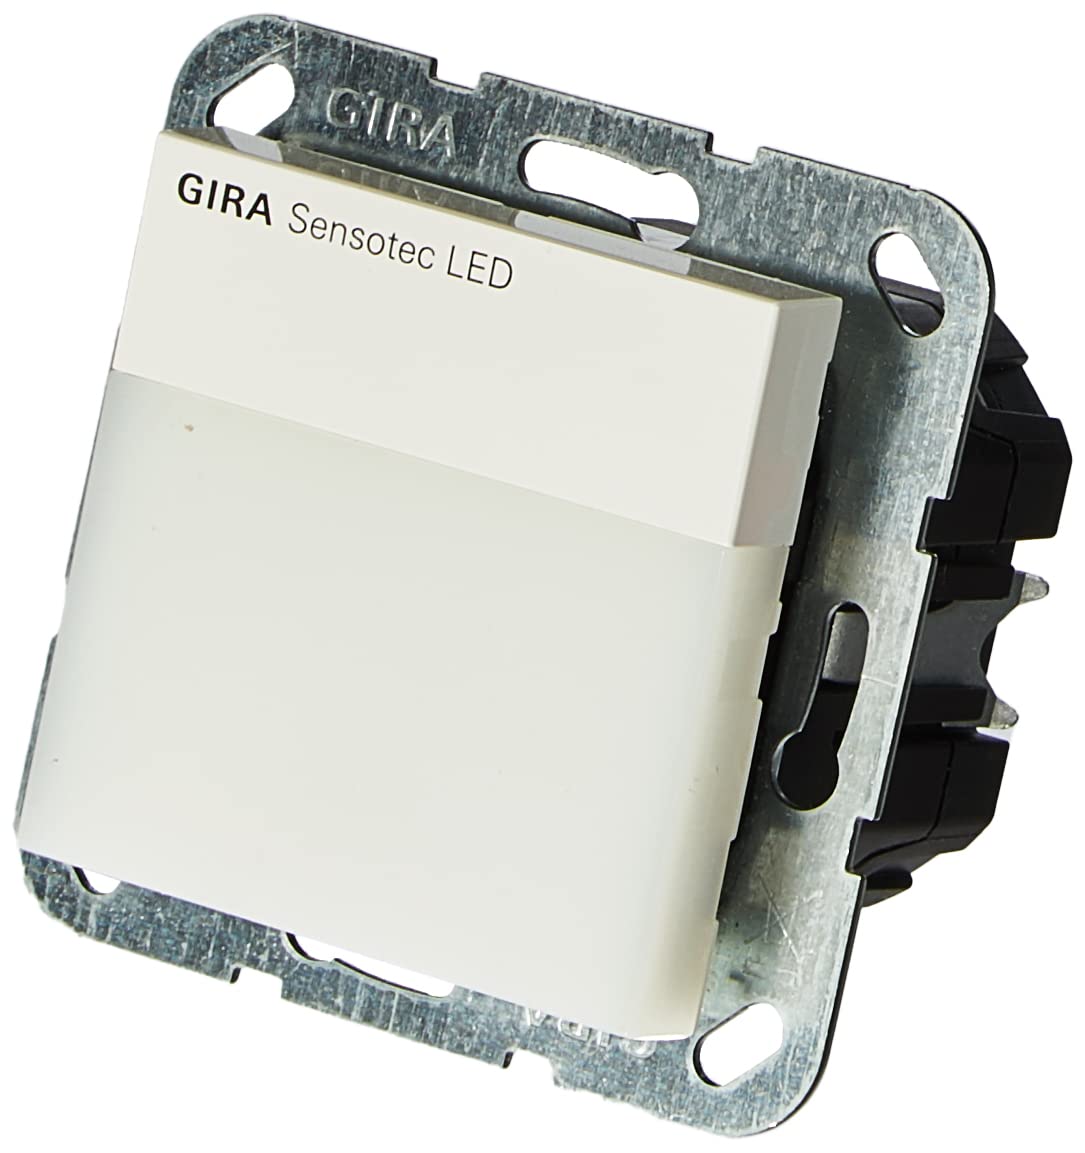 Gira 2237803 Sensotec LED UP-Bewegungsmelder ST55 rw-glänzend, ohne Fernbedienung, Weiß